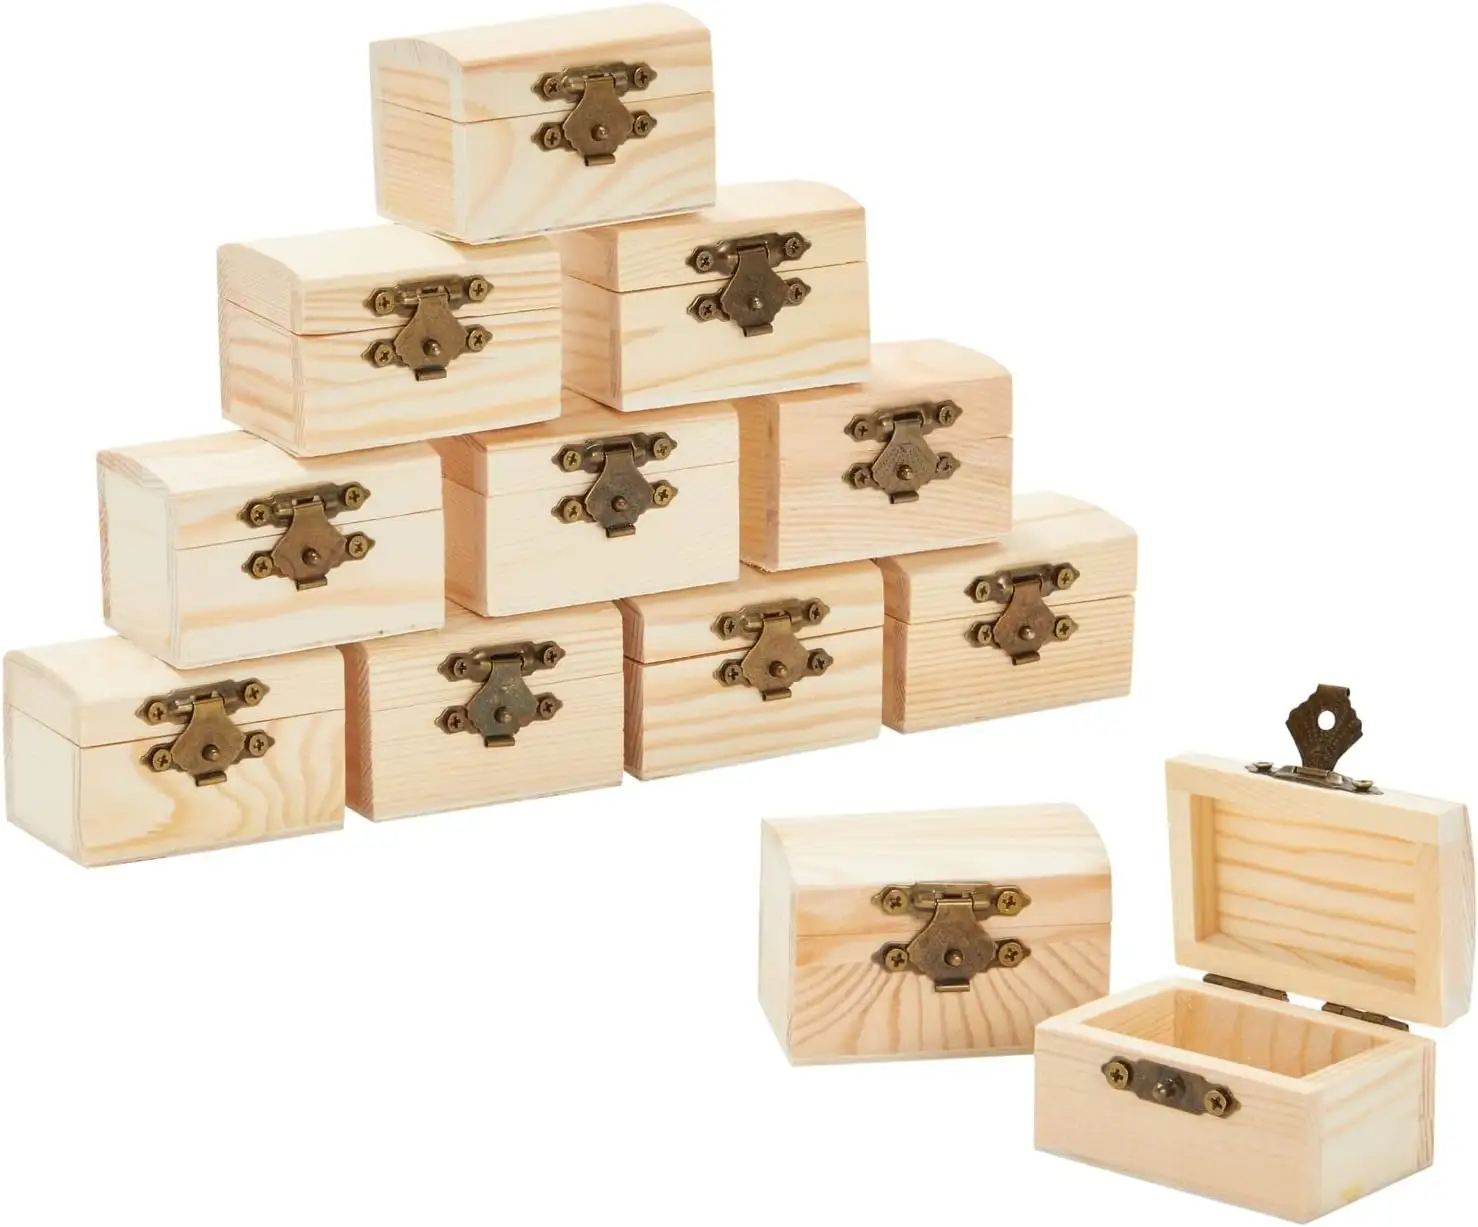 صندوق صندوق خشبي للكنوز صندوق خشبي مع غطاء مفصلي للحرف اليدوية